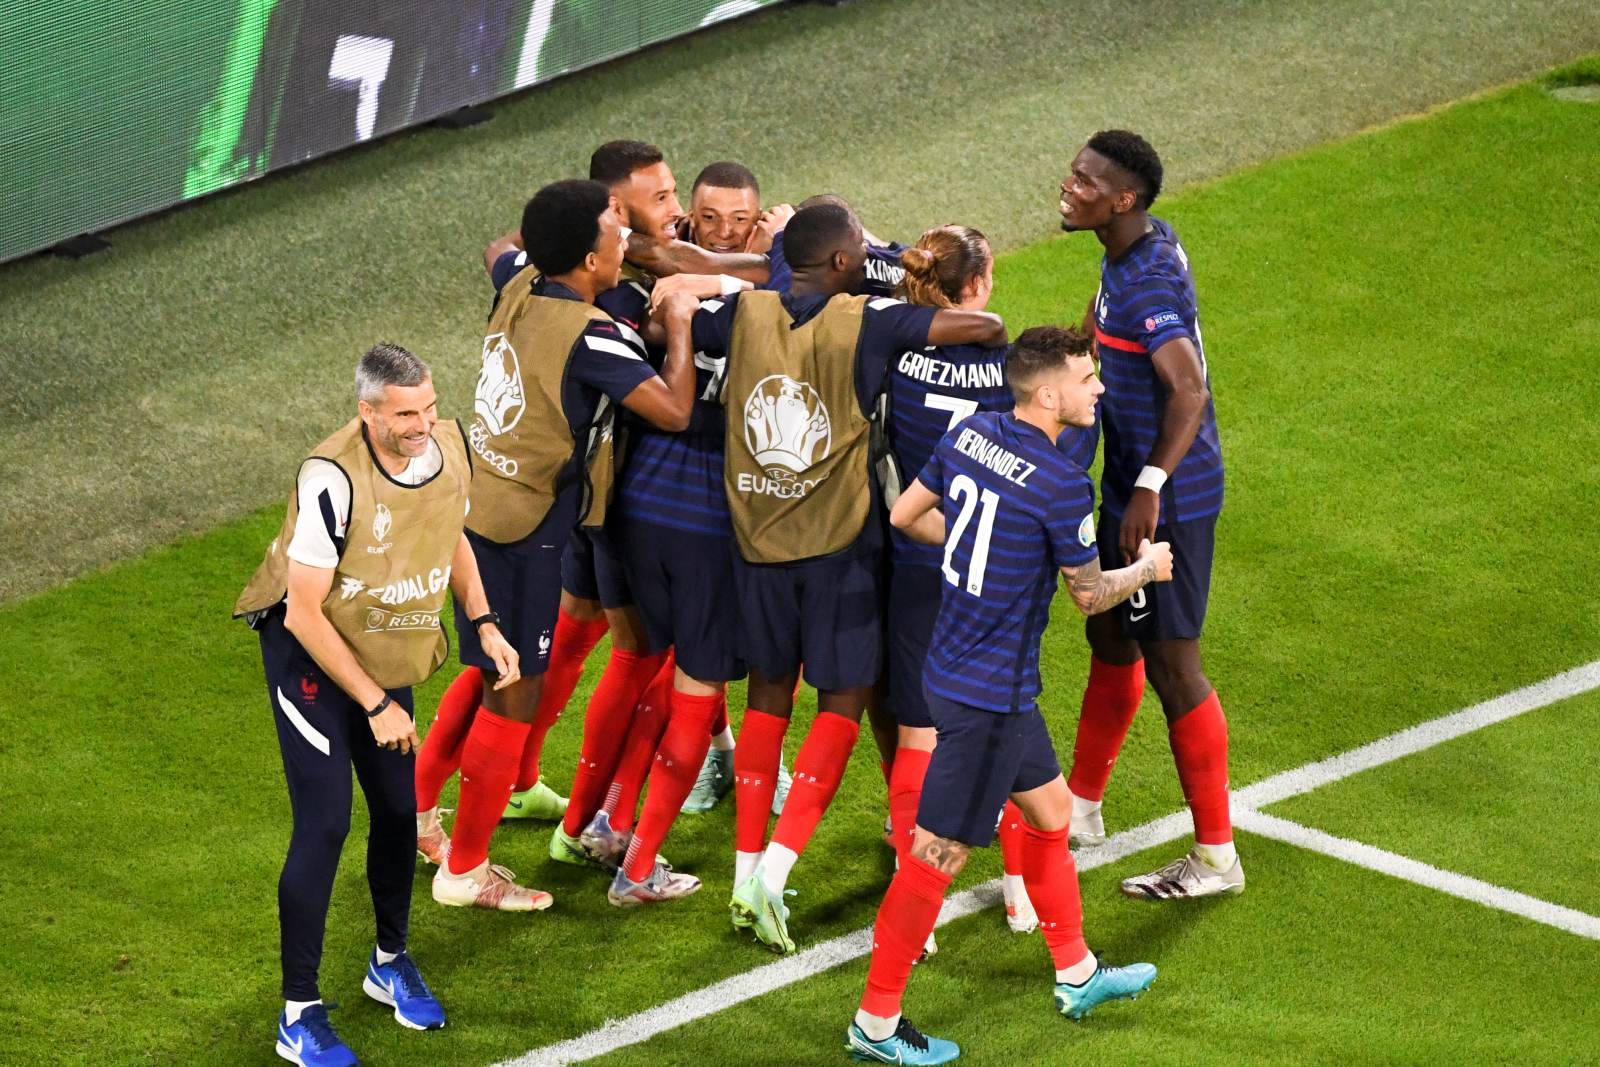 Франция не проигрывает в чемпионатах мира с 1982 года, если открывает счет